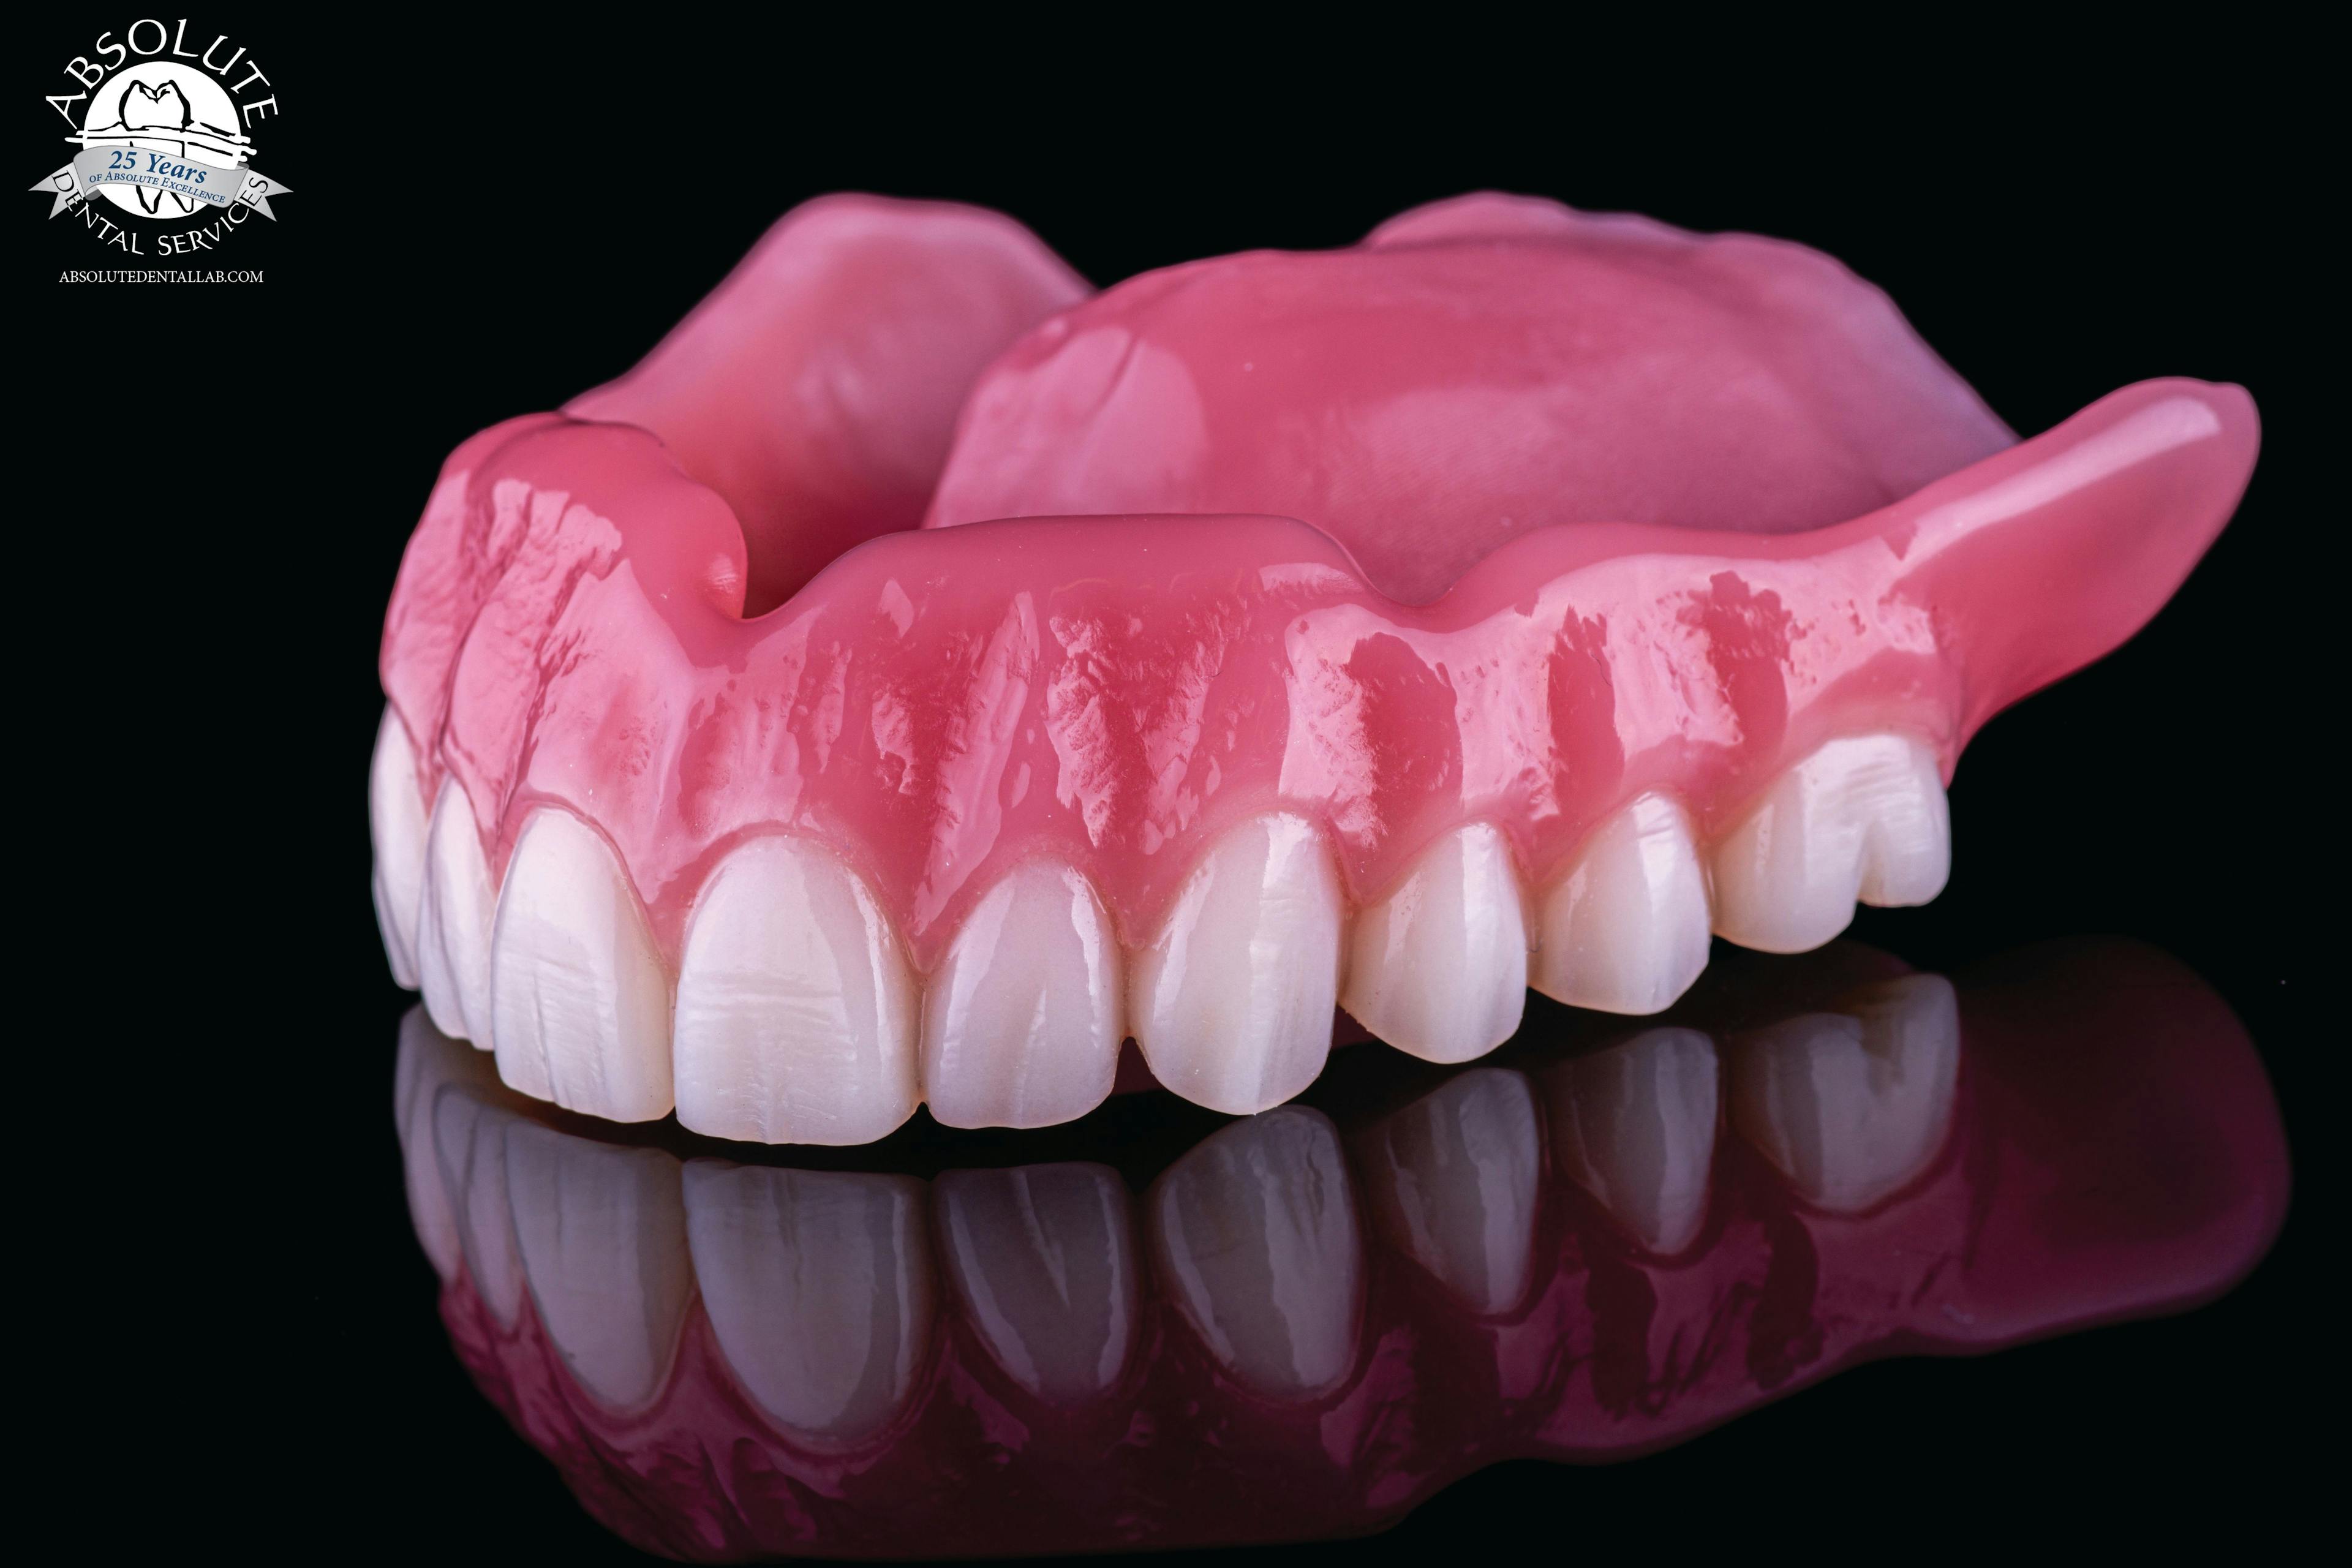 3D-printed, Lucitone Denture.